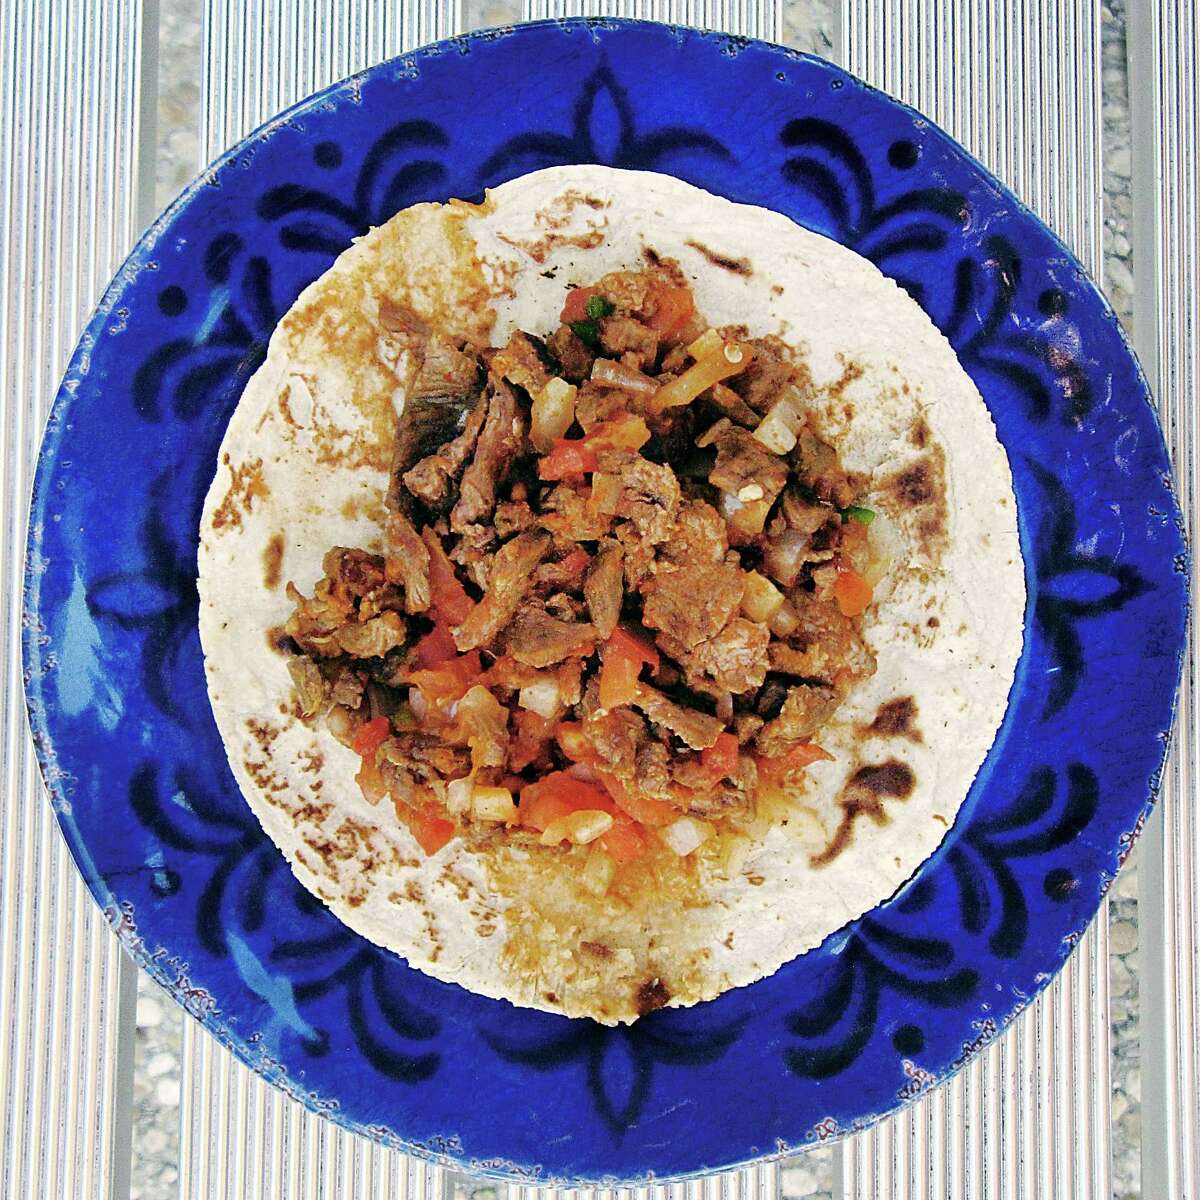 Carne asada a la mexicana taco on a handmade corn tortilla from El Potosino Mexican Restaurant #2.